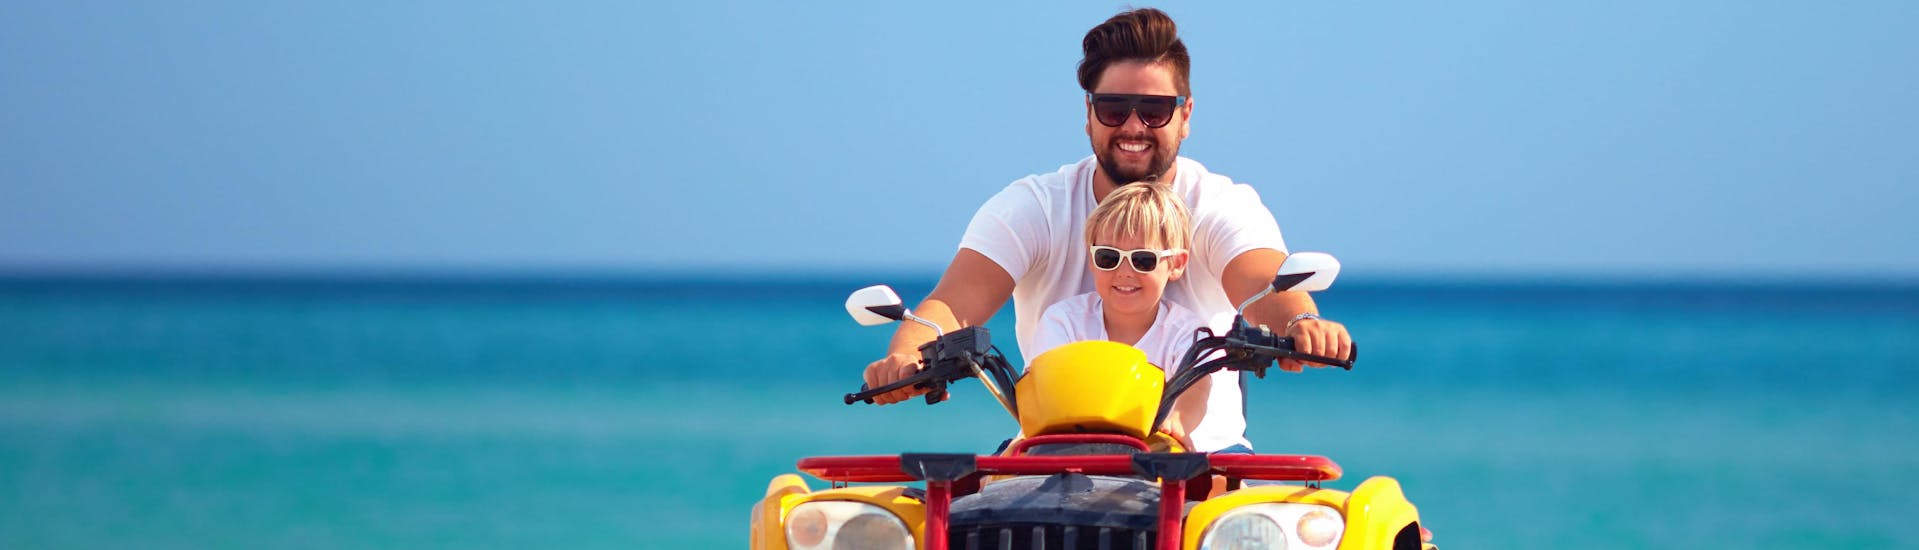 Kreta: Een vader rijdt tijdens de vakantie met zijn zoon op een quad.